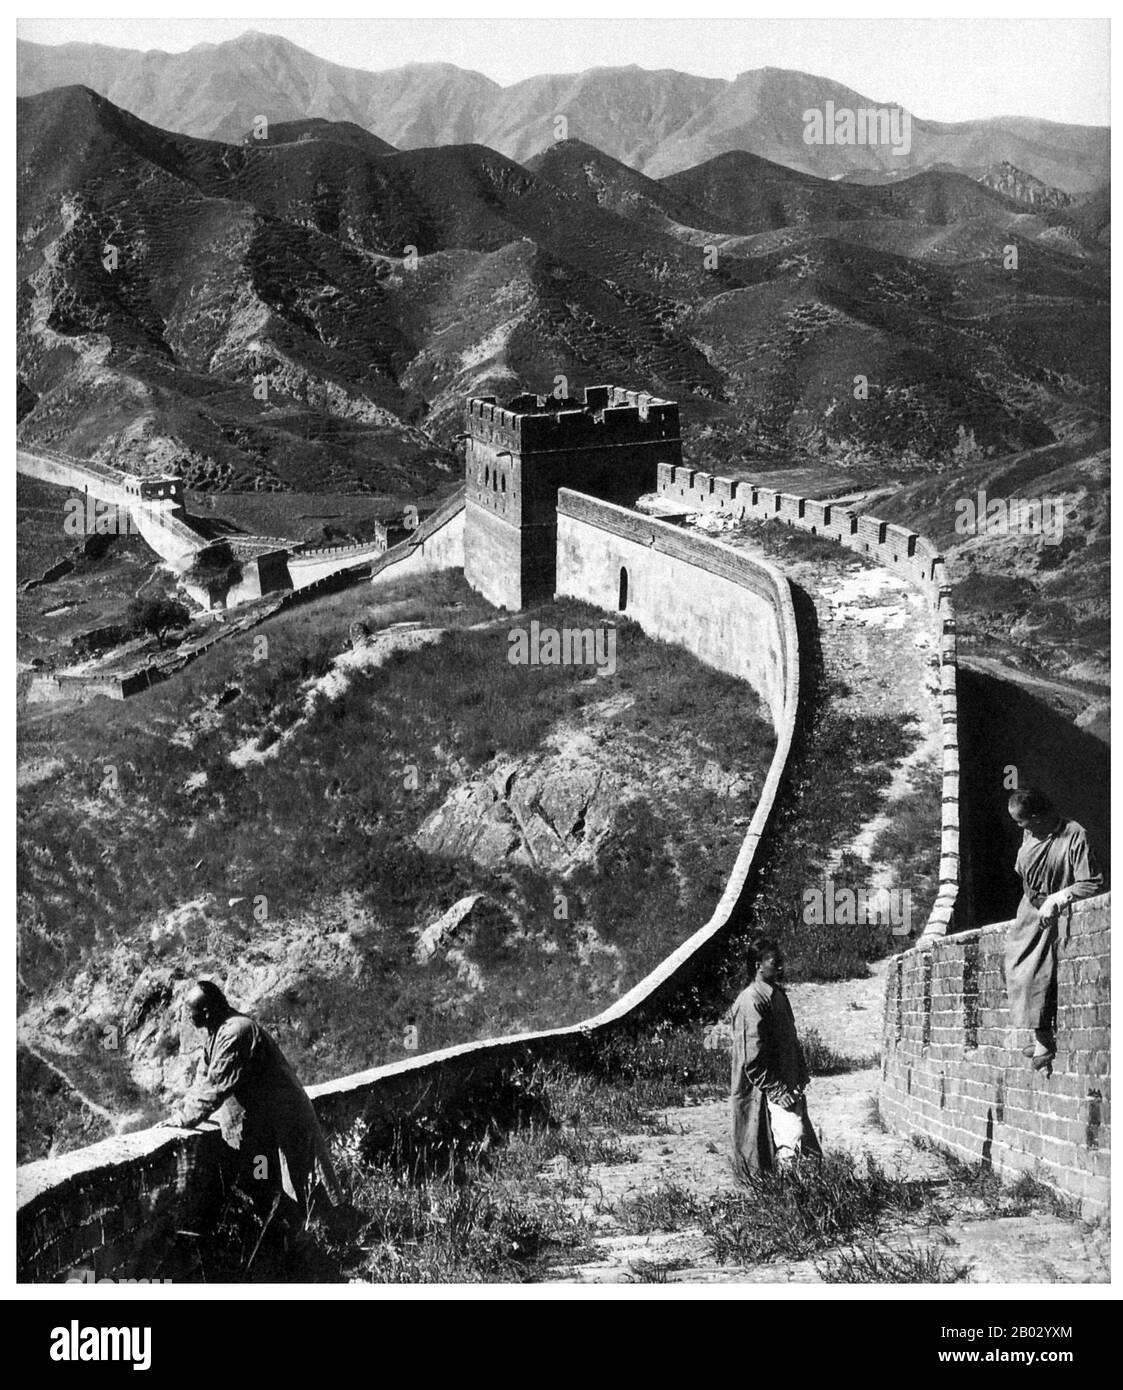 La Grande Muraglia (Wanli Changcheng) è una delle maggiori conquiste e risale a più di due millenni, quando una serie di muri più corti fu sistematicamente collegata durante la dinastia Qin (221–206 a.C.) per proteggere i confini settentrionali della Cina. Il Muro, originariamente costruito per tenere fuori invasori barbarici da nord, si estende per oltre 5.900km dal Golfo di Bohai nel Mar giallo fino a Jiayuguan, sulle montagne della provincia di Gansu. Mentre la maggior parte del muro è ora in rovina, alcune sezioni sono state riparate negli ultimi anni. I governanti Ming, che nel 1368 pose fine all'alieno Foto Stock